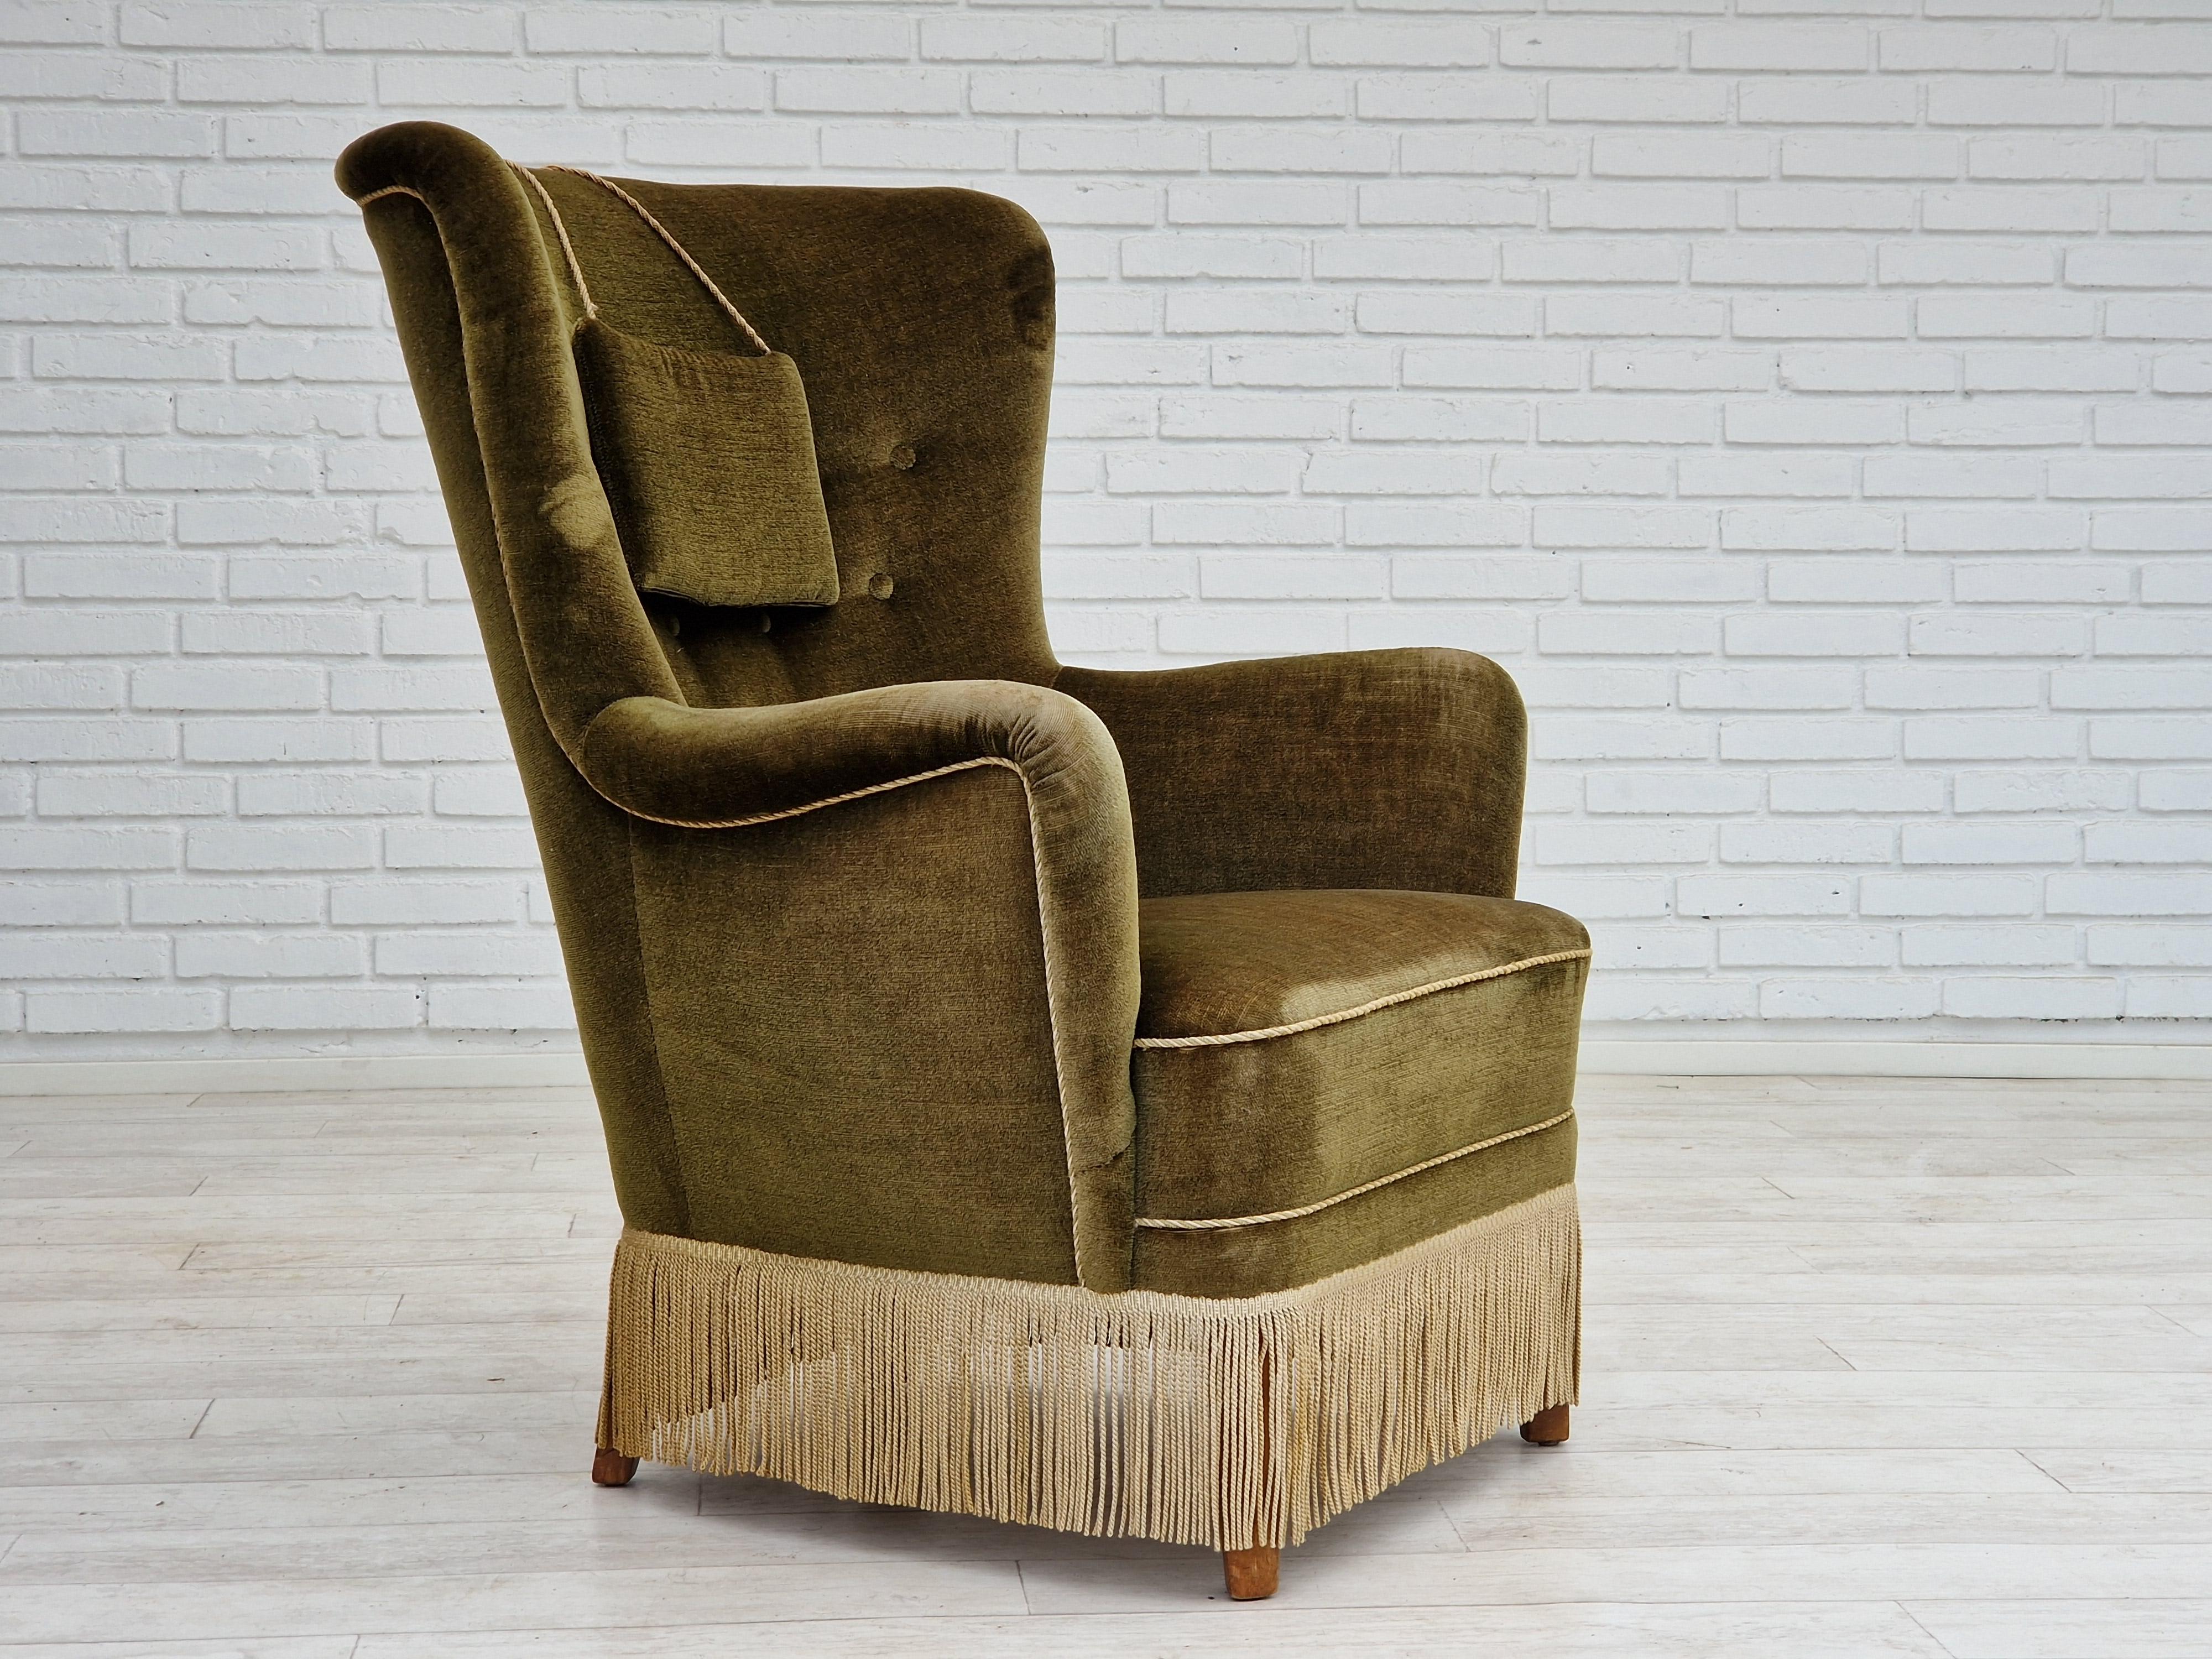 Années 1960, Design/One. Fauteuil à dossier haut en bon état d'origine : pas d'odeurs ni de taches. Velours vert d'origine, assise à ressorts, pieds en hêtre. Légère usure/patine sur l'accoudoir. Fabriqué par un fabricant de meubles danois vers 1960.